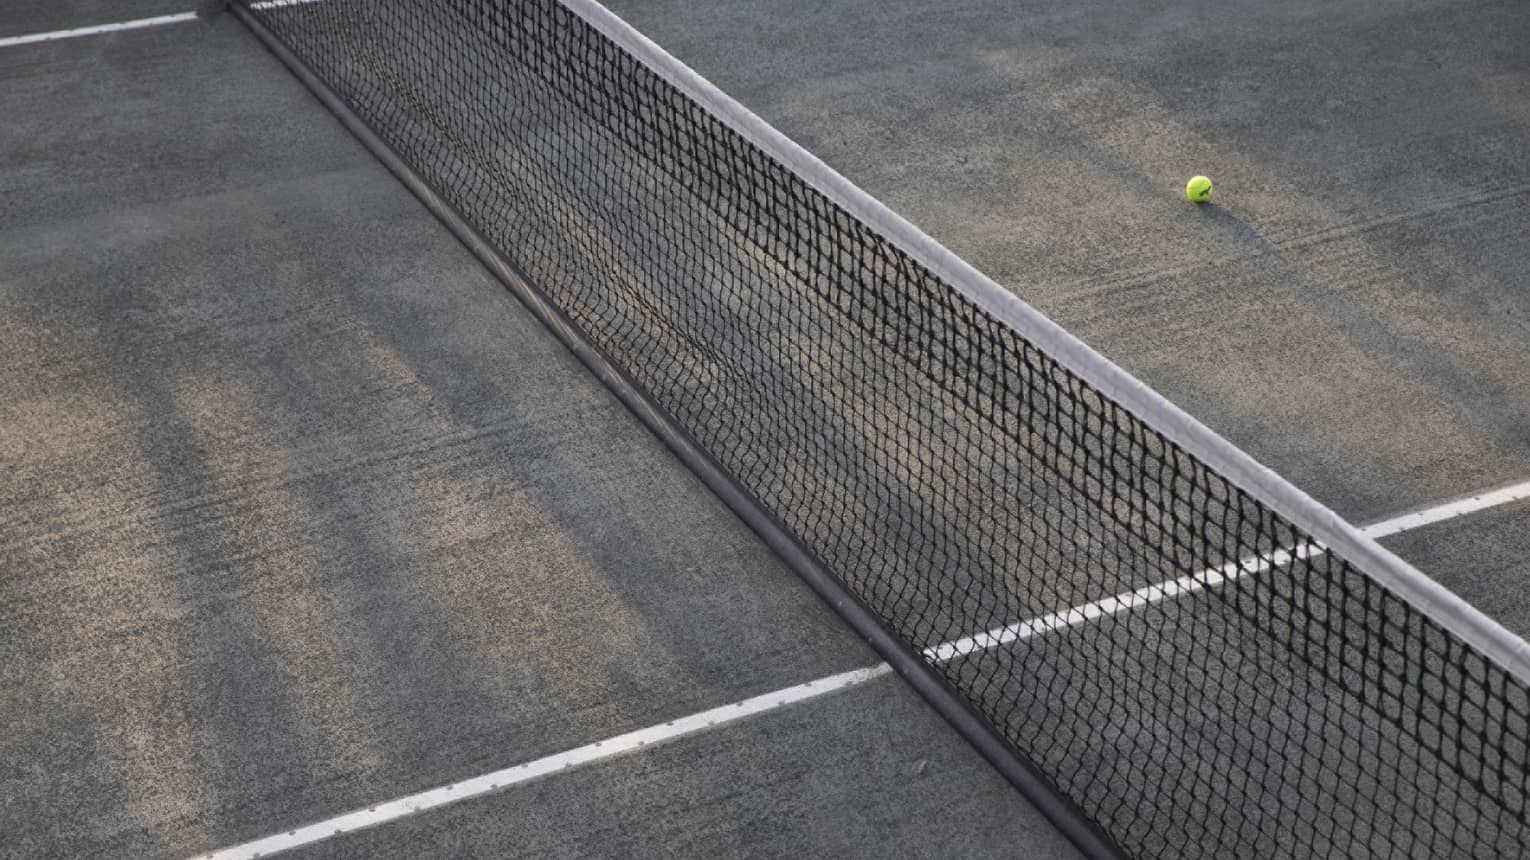 A lone tennis ball lies near the net on an empty court